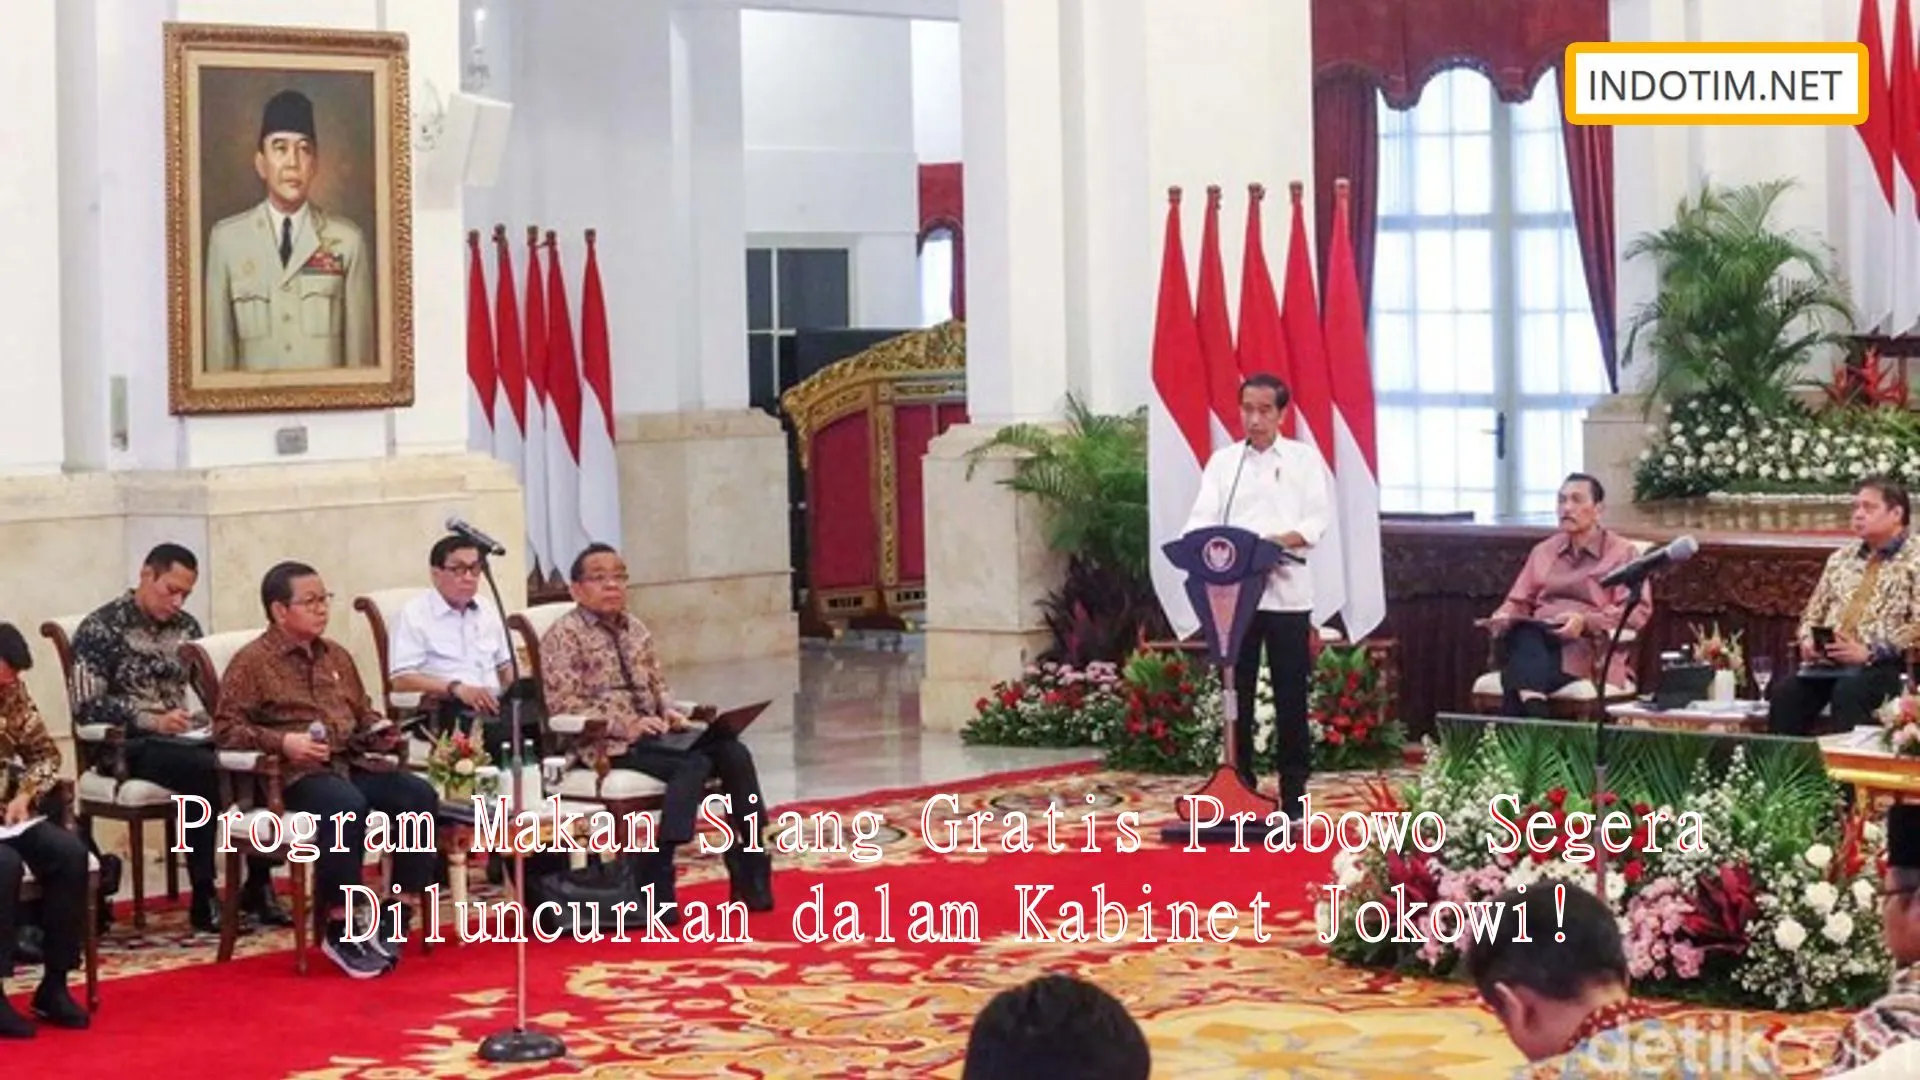 Program Makan Siang Gratis Prabowo Segera Diluncurkan dalam Kabinet Jokowi!